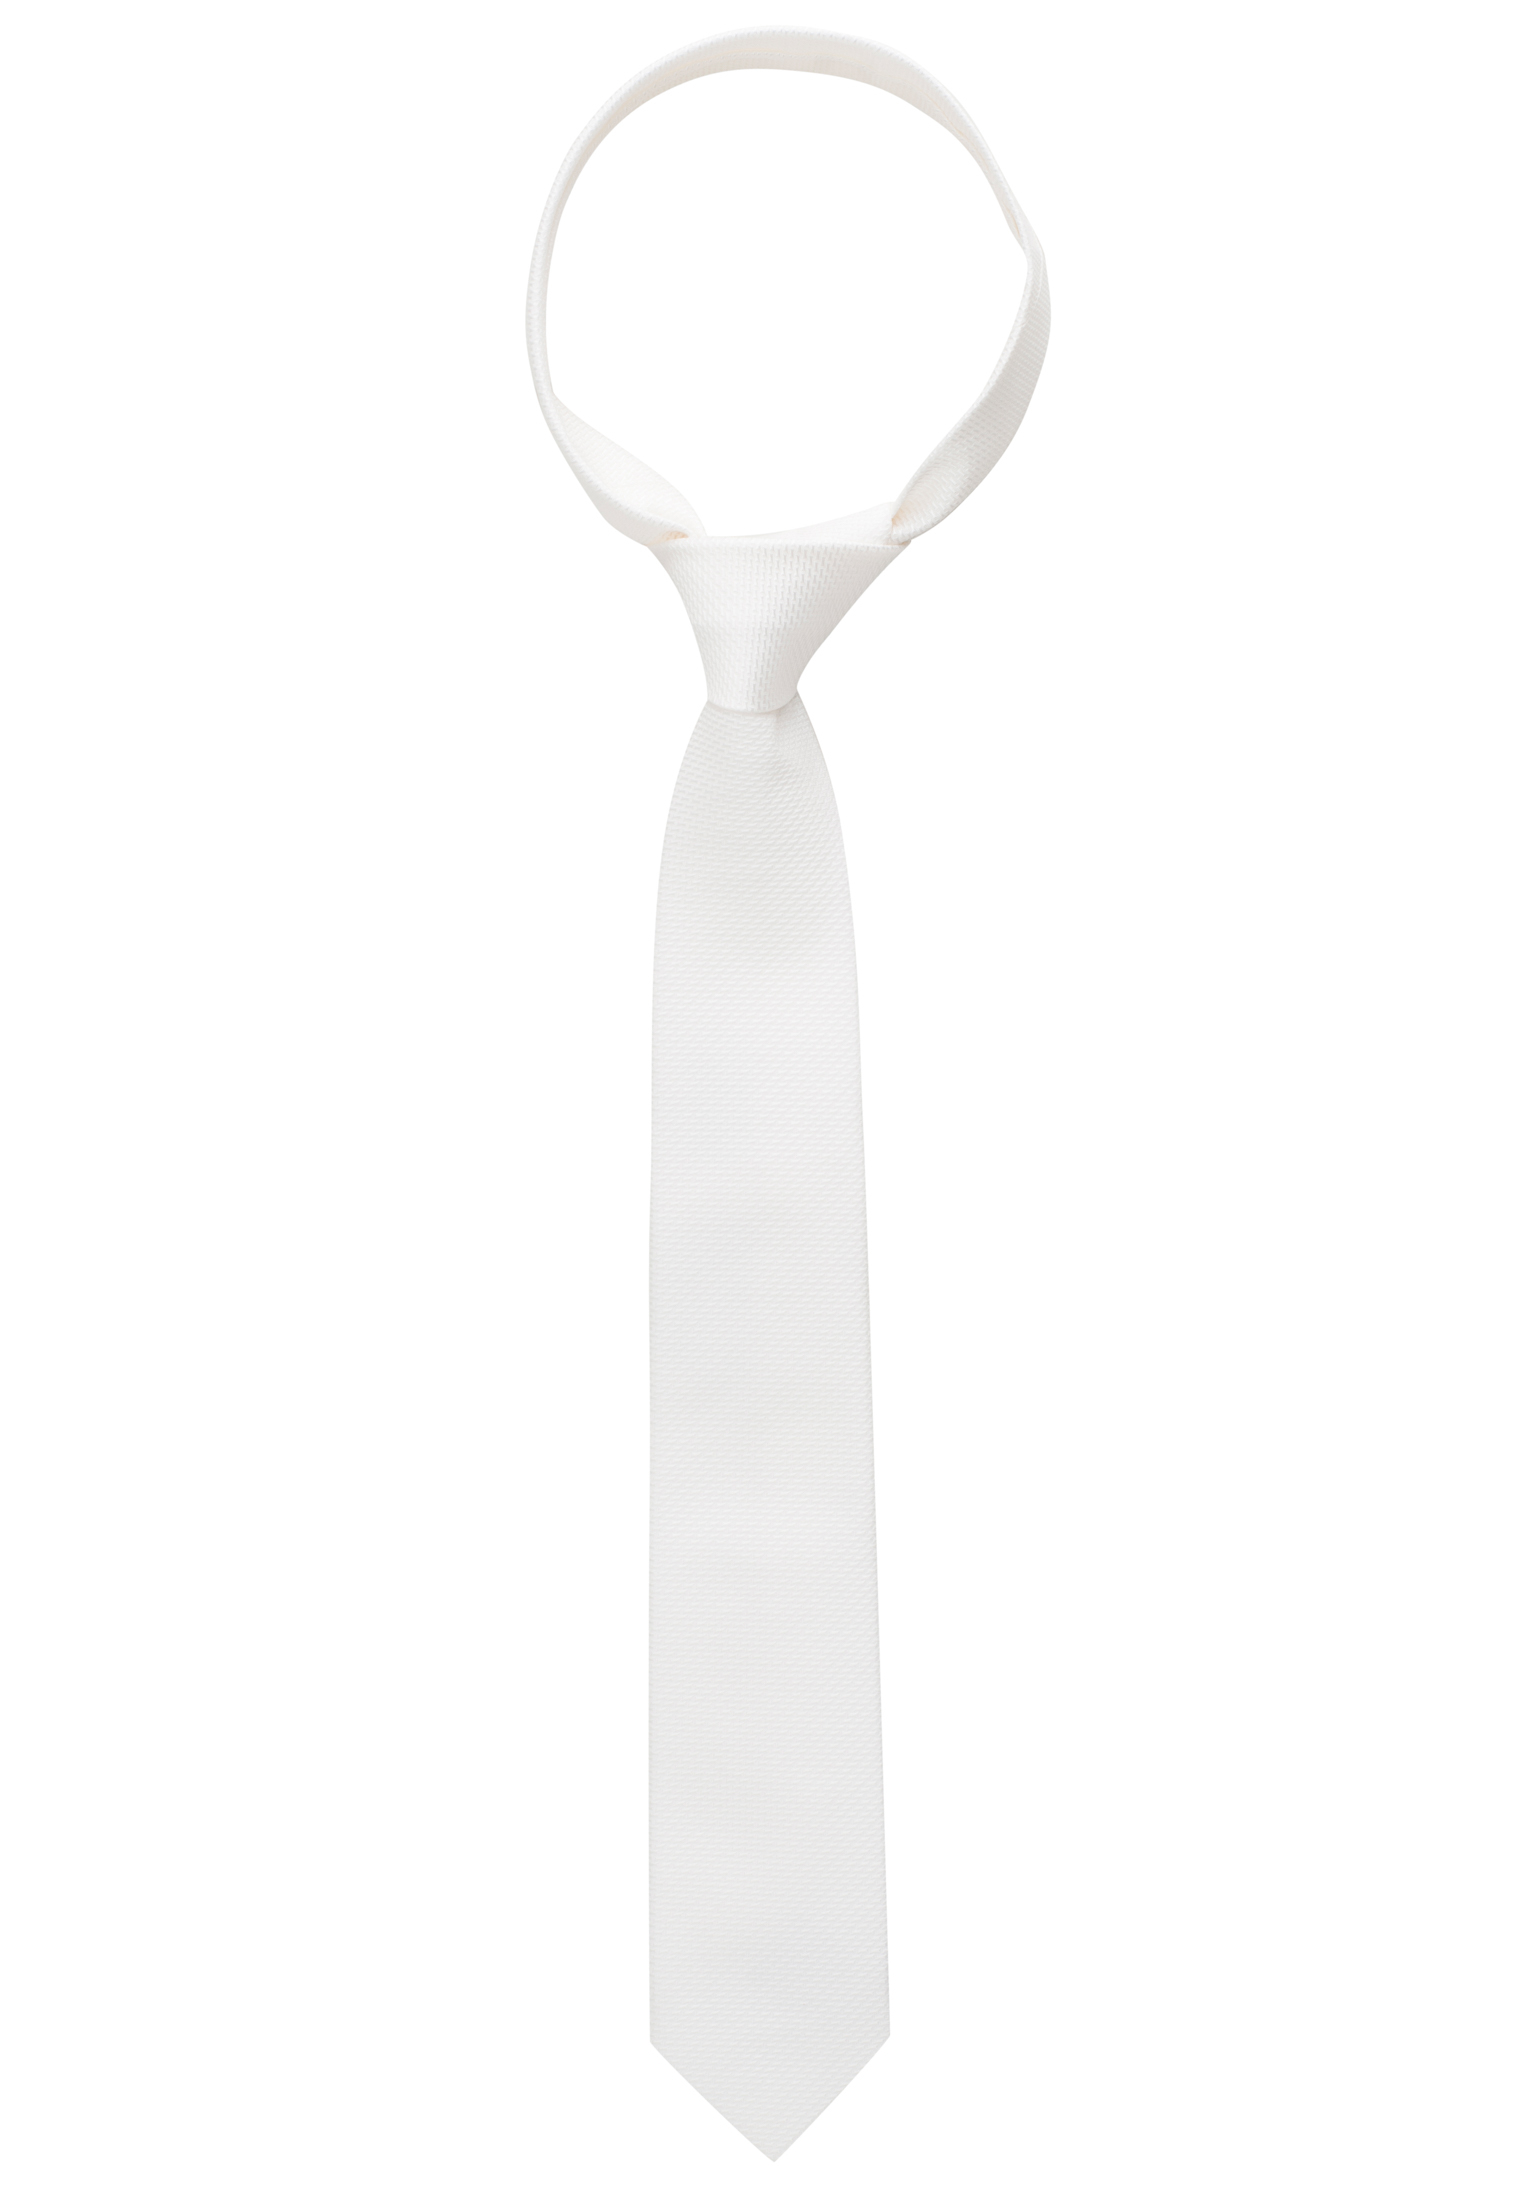 Krawatte in weiß strukturiert | weiß | 142 | 1AC01872-00-01-142